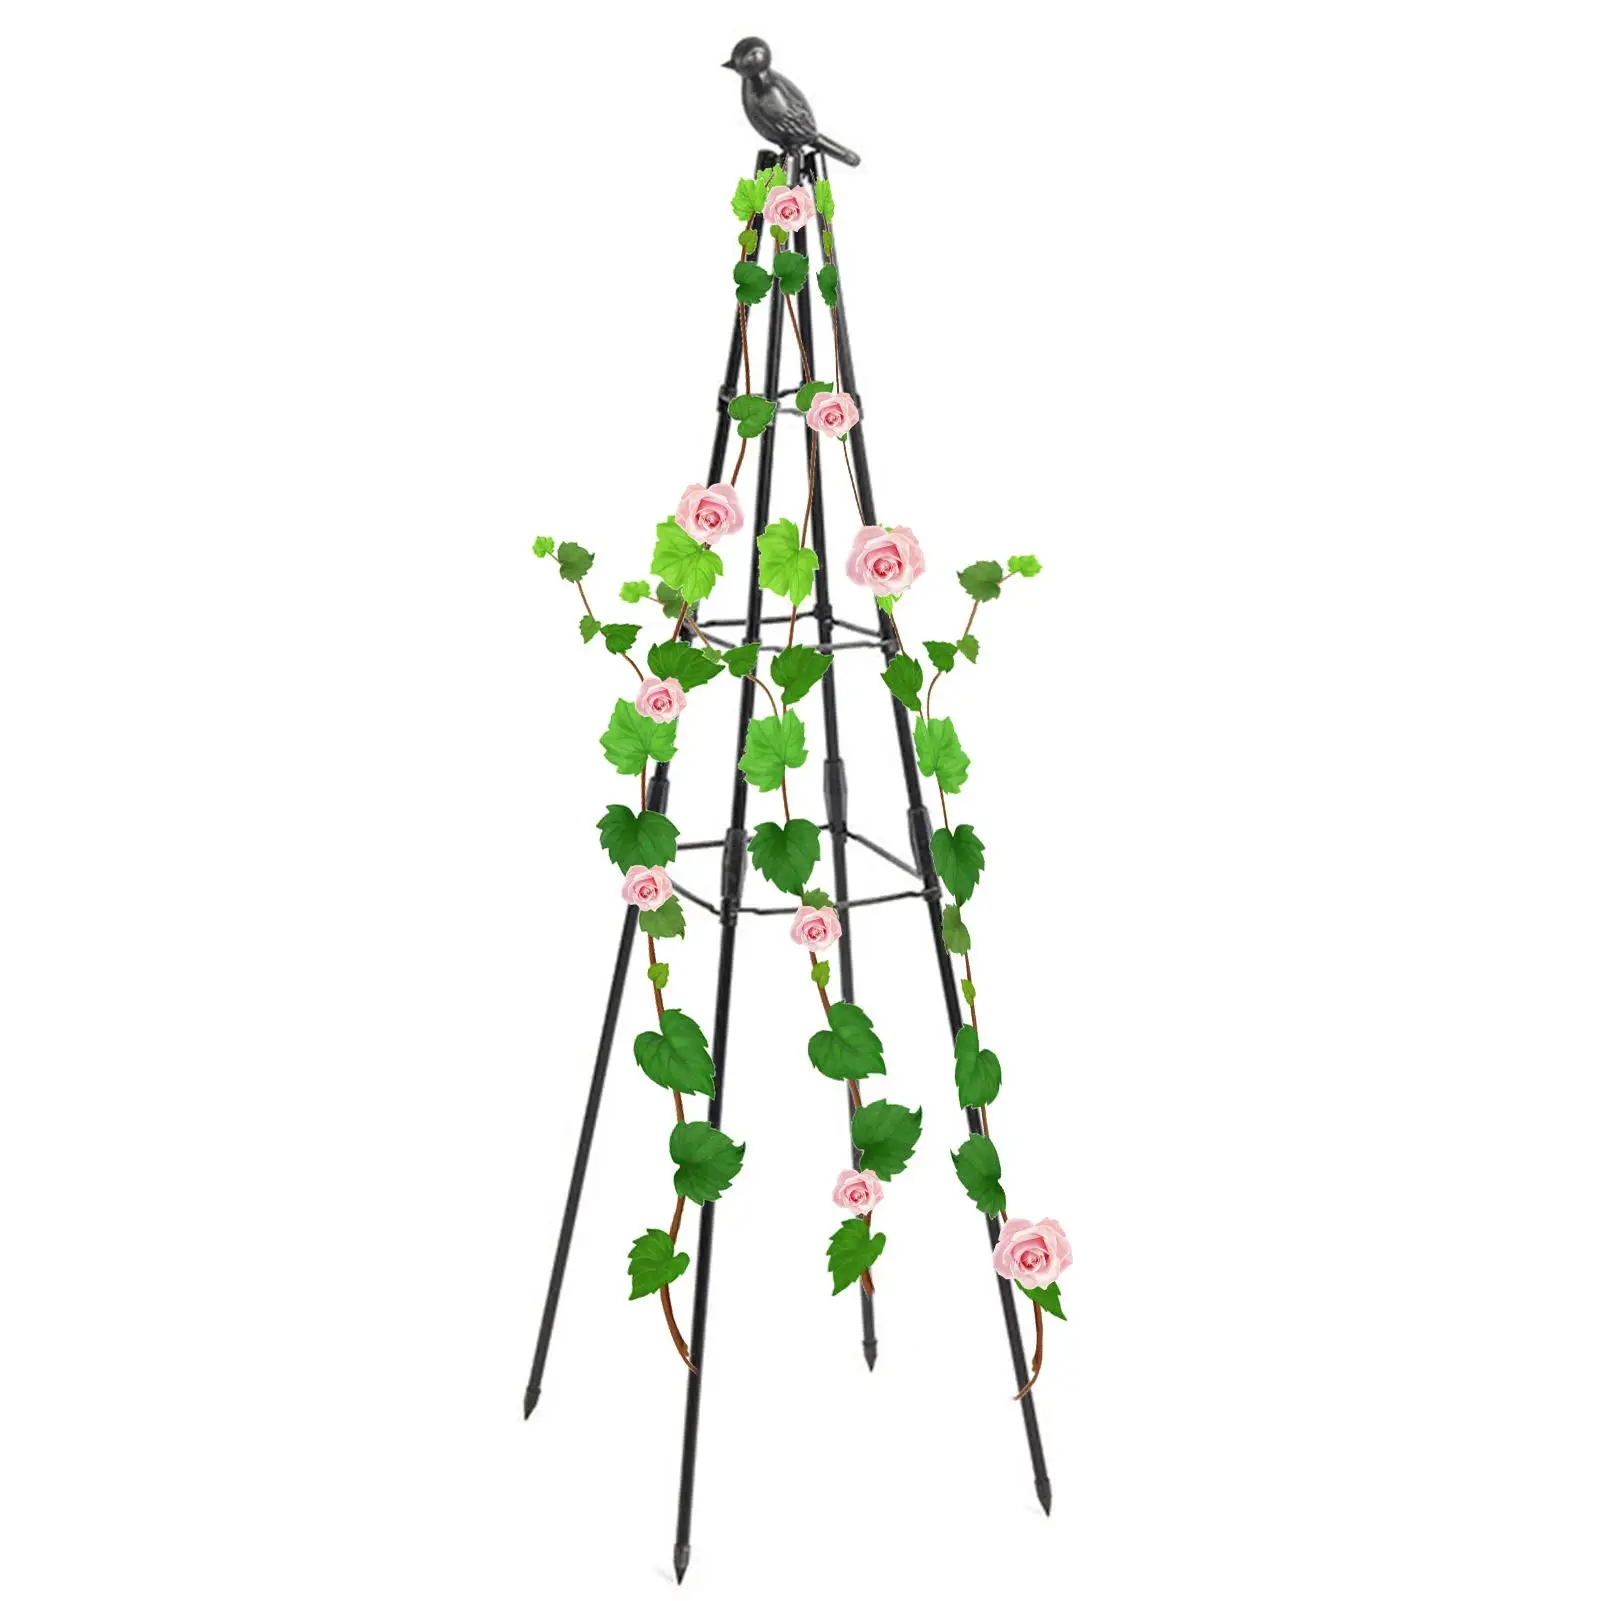 

Решетка для подъема растений, садовый обелиск для горшечных альпинистских растений, комнатная и уличная рама с скульптурой в виде птиц